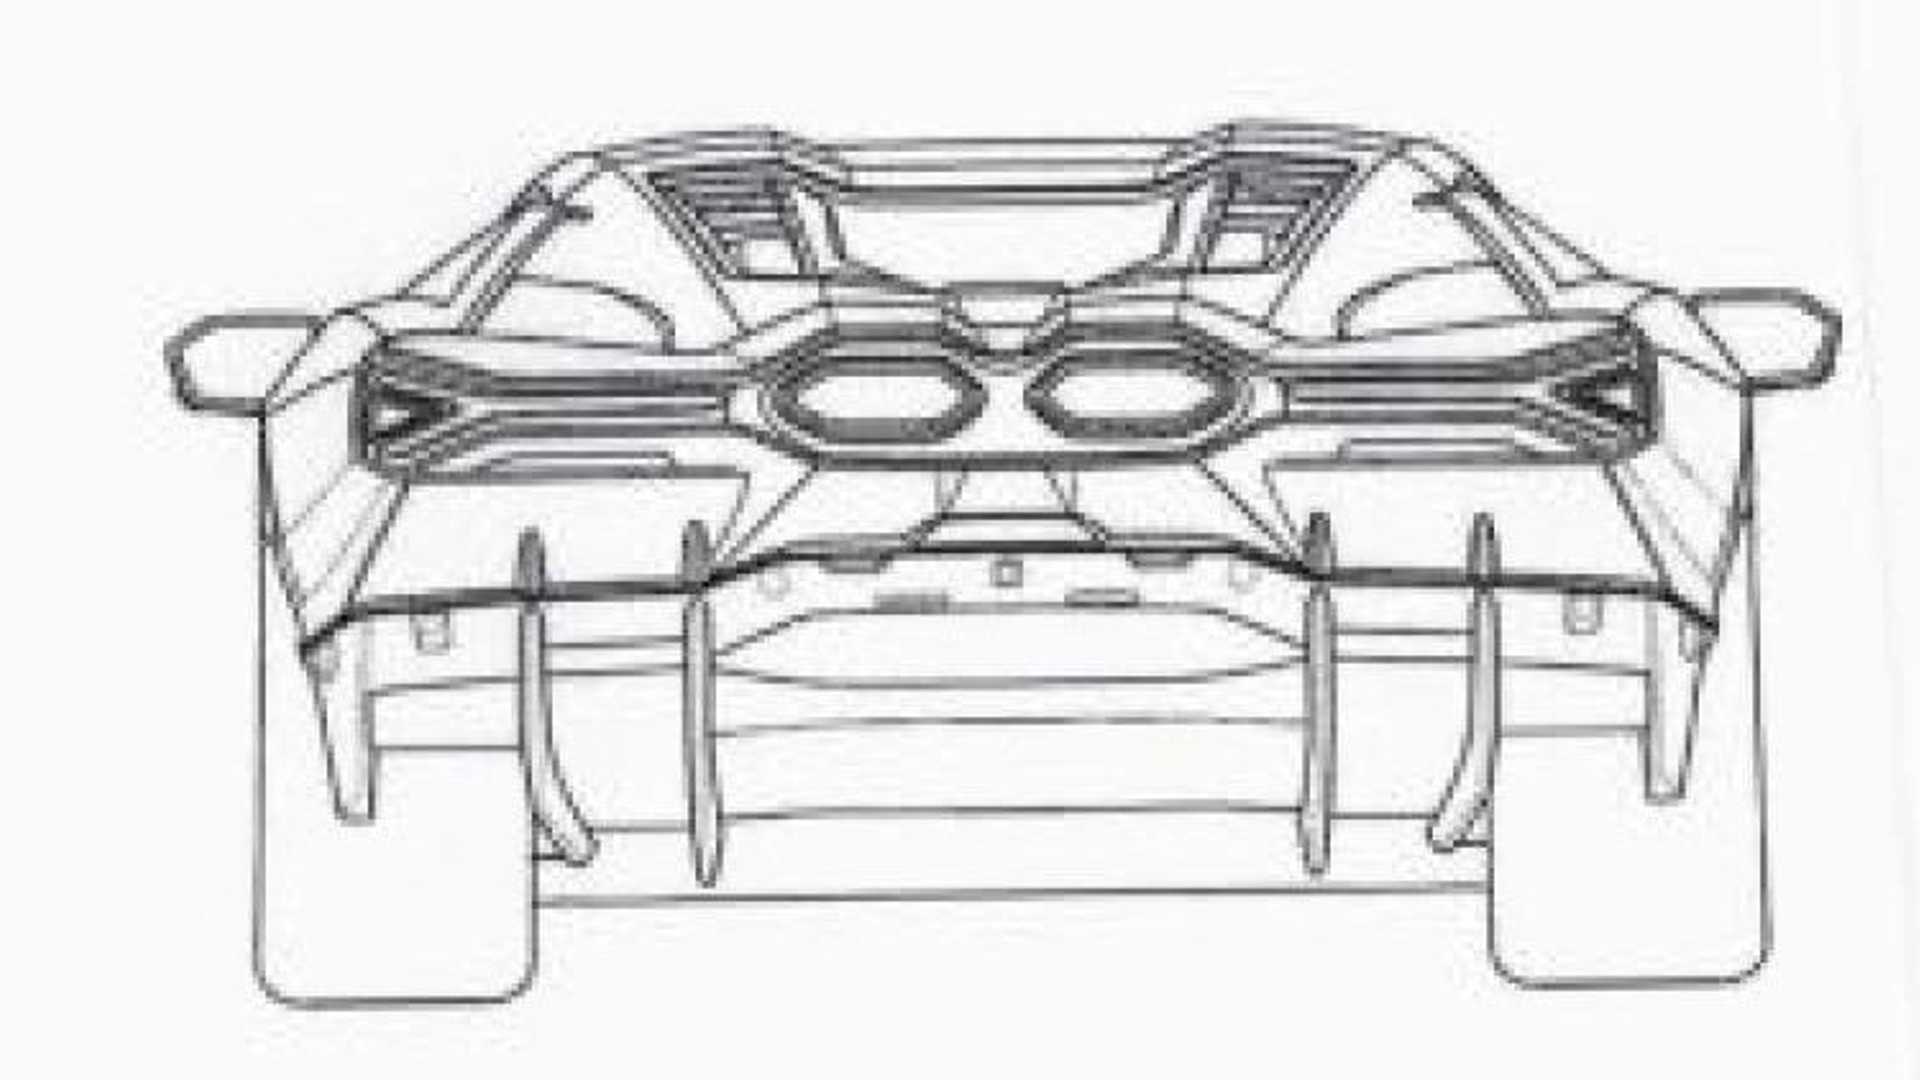 Lamborghini-Aventador-Replacement-Patent-Images-6